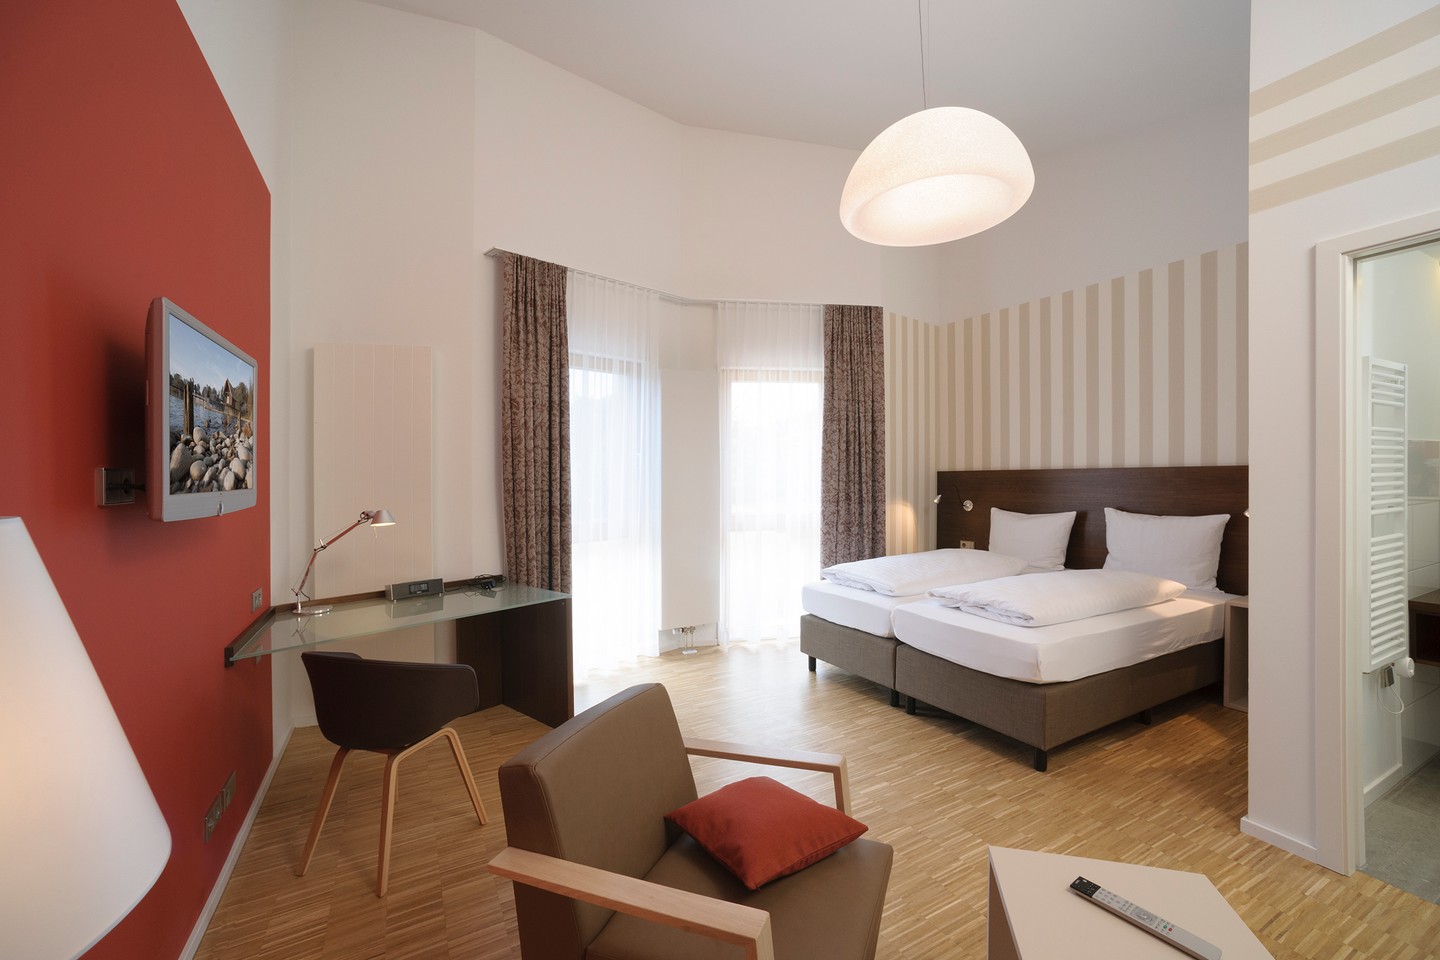 hotel_gasthaus_seehoernle_rollstuhlgerecht_reisen_tagungshotel_gaienhofen_horn_doppelzimmer.jpg
				